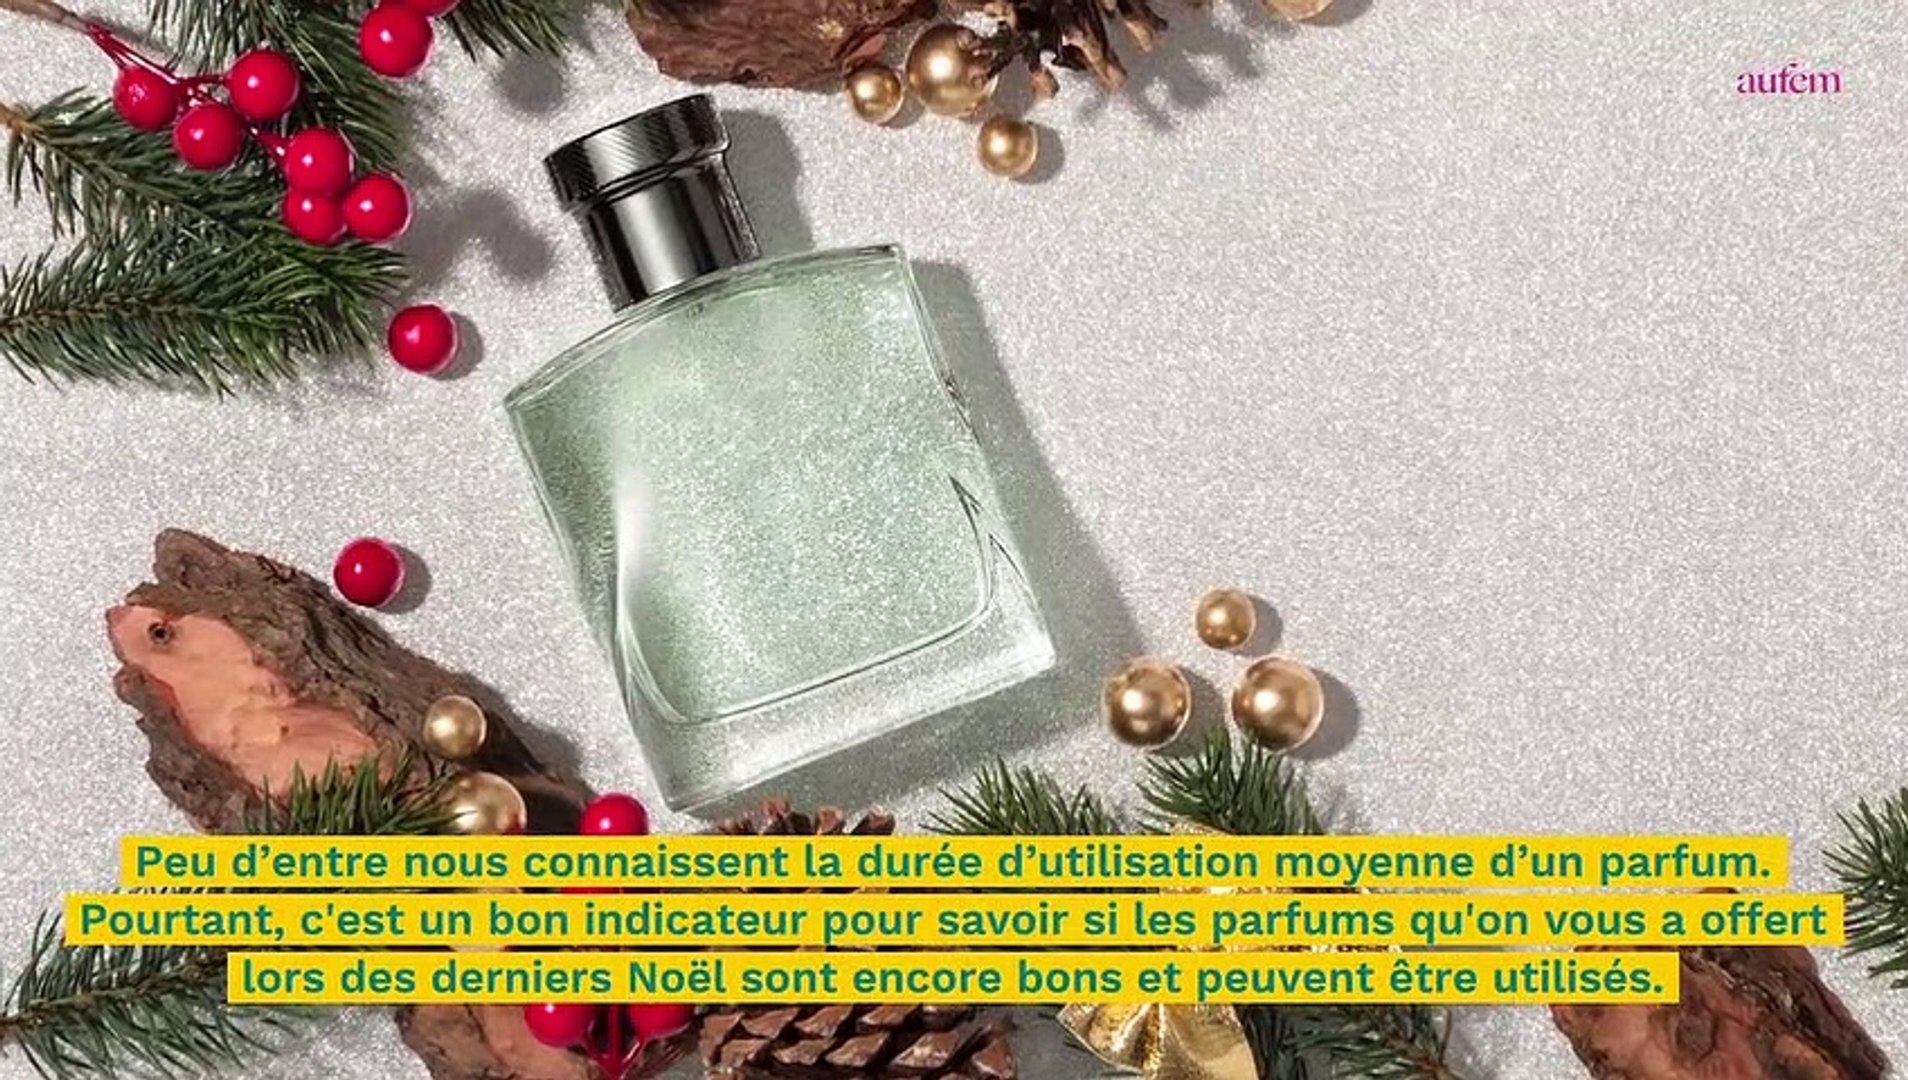 SOS Beauté : comment savoir si mon parfum est périmé ? - Vidéo Dailymotion